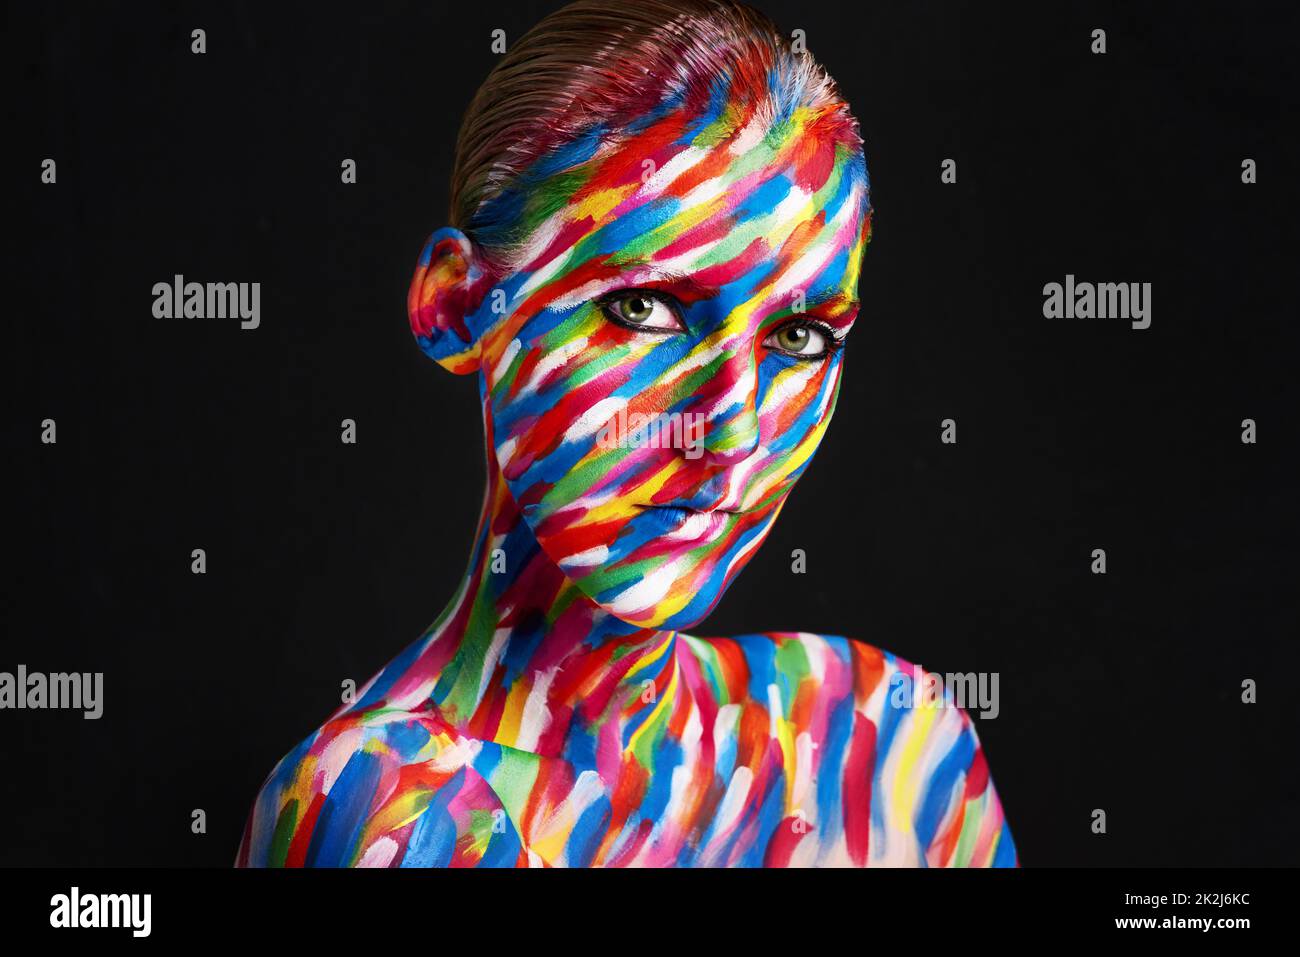 Une beauté colorée et captivante.Photo studio d'une jeune femme posant avec une peinture de couleur vive sur son visage sur un fond noir. Banque D'Images